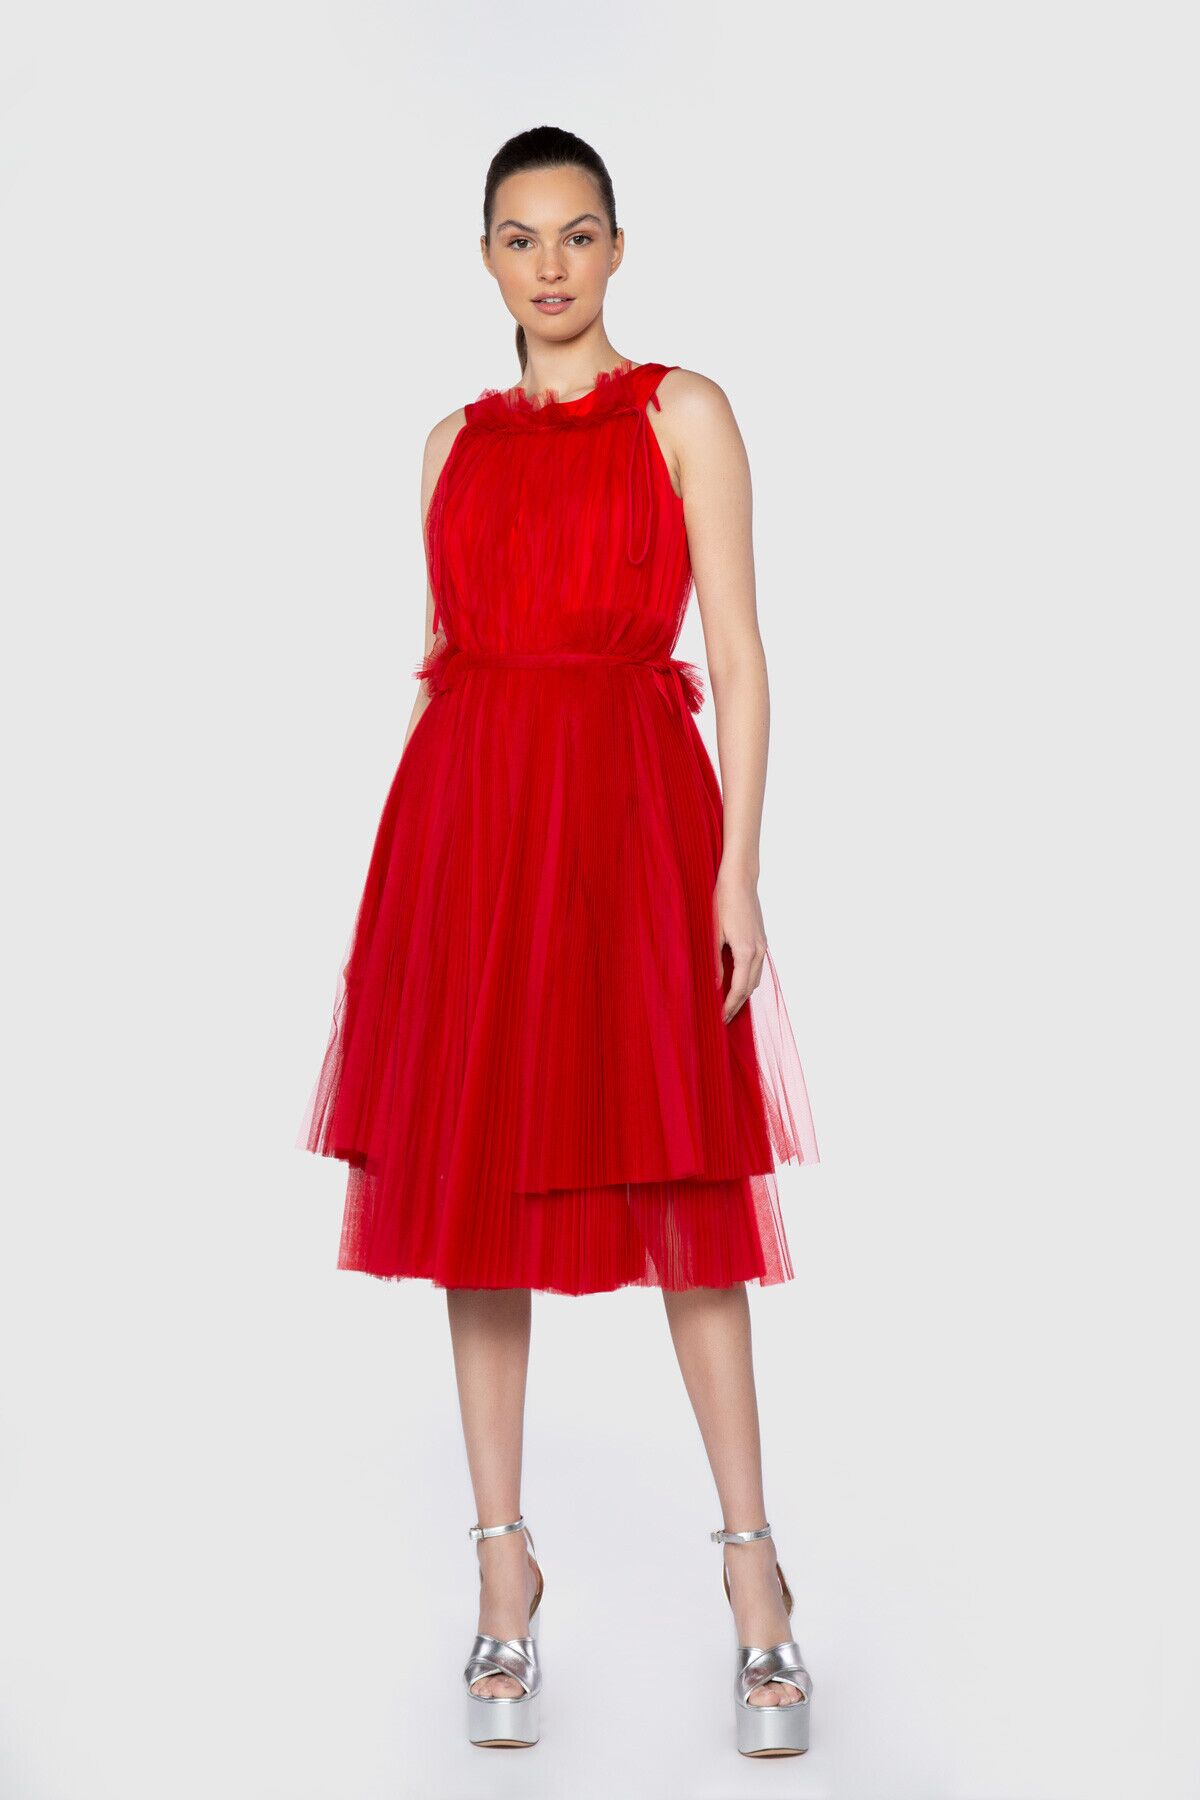 GIZIAGATE - Dice Kayek Halter Yaka Pilise Detaylı Diz Altı Kırmızı Tasarım Elbise